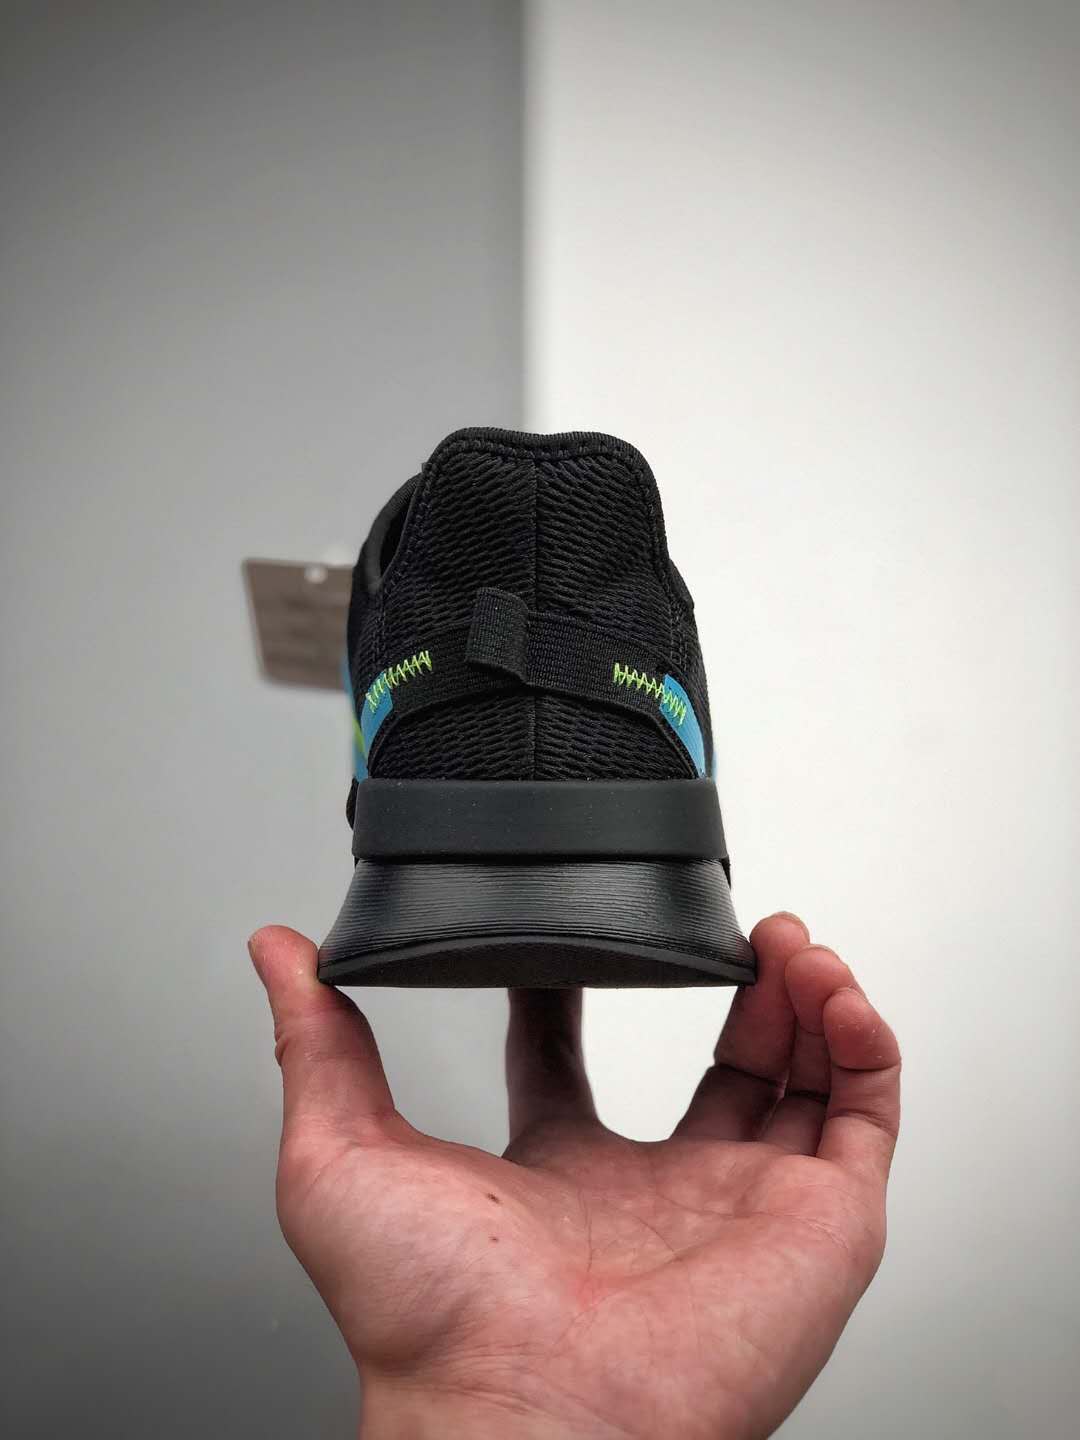 Adidas U_Path Run Blue Glow EG5330 - Stylish & Comfortable Footwear!